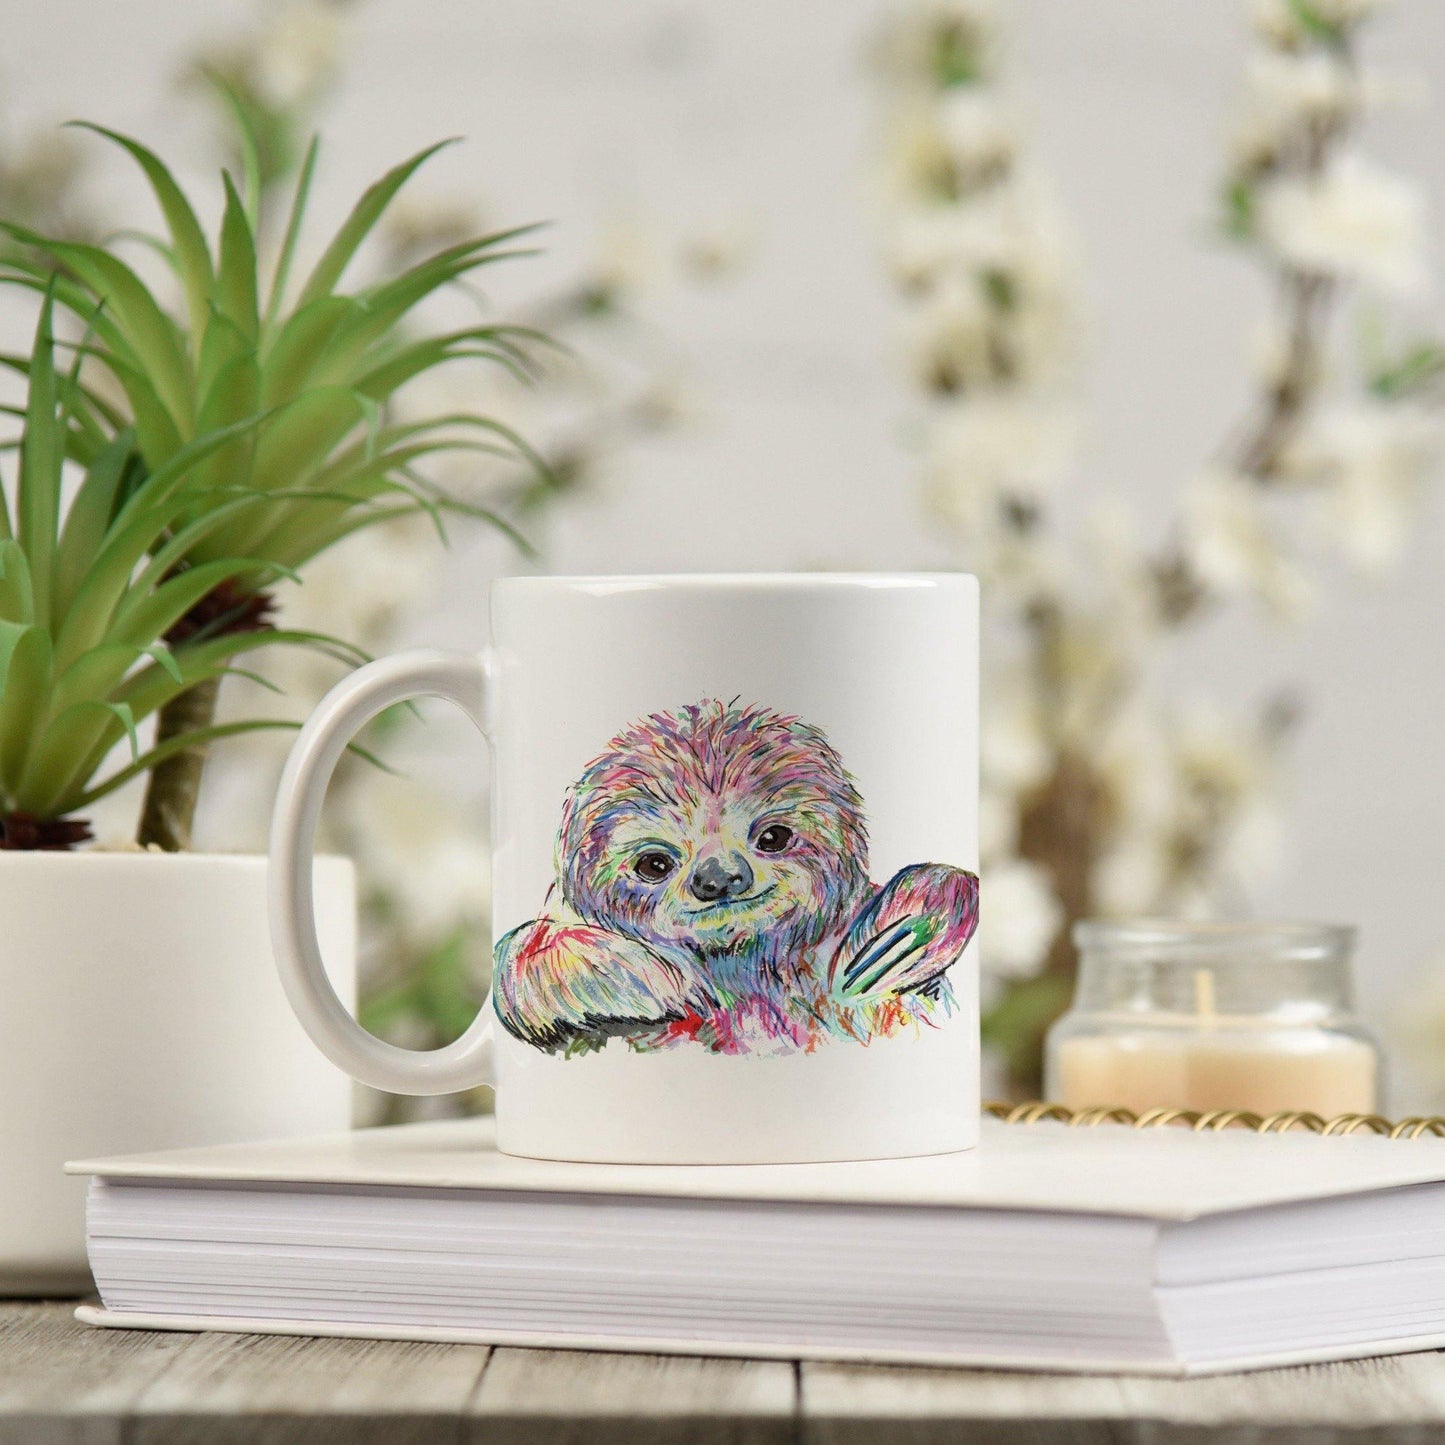 Watercolour sloth mug - Sew Tilley